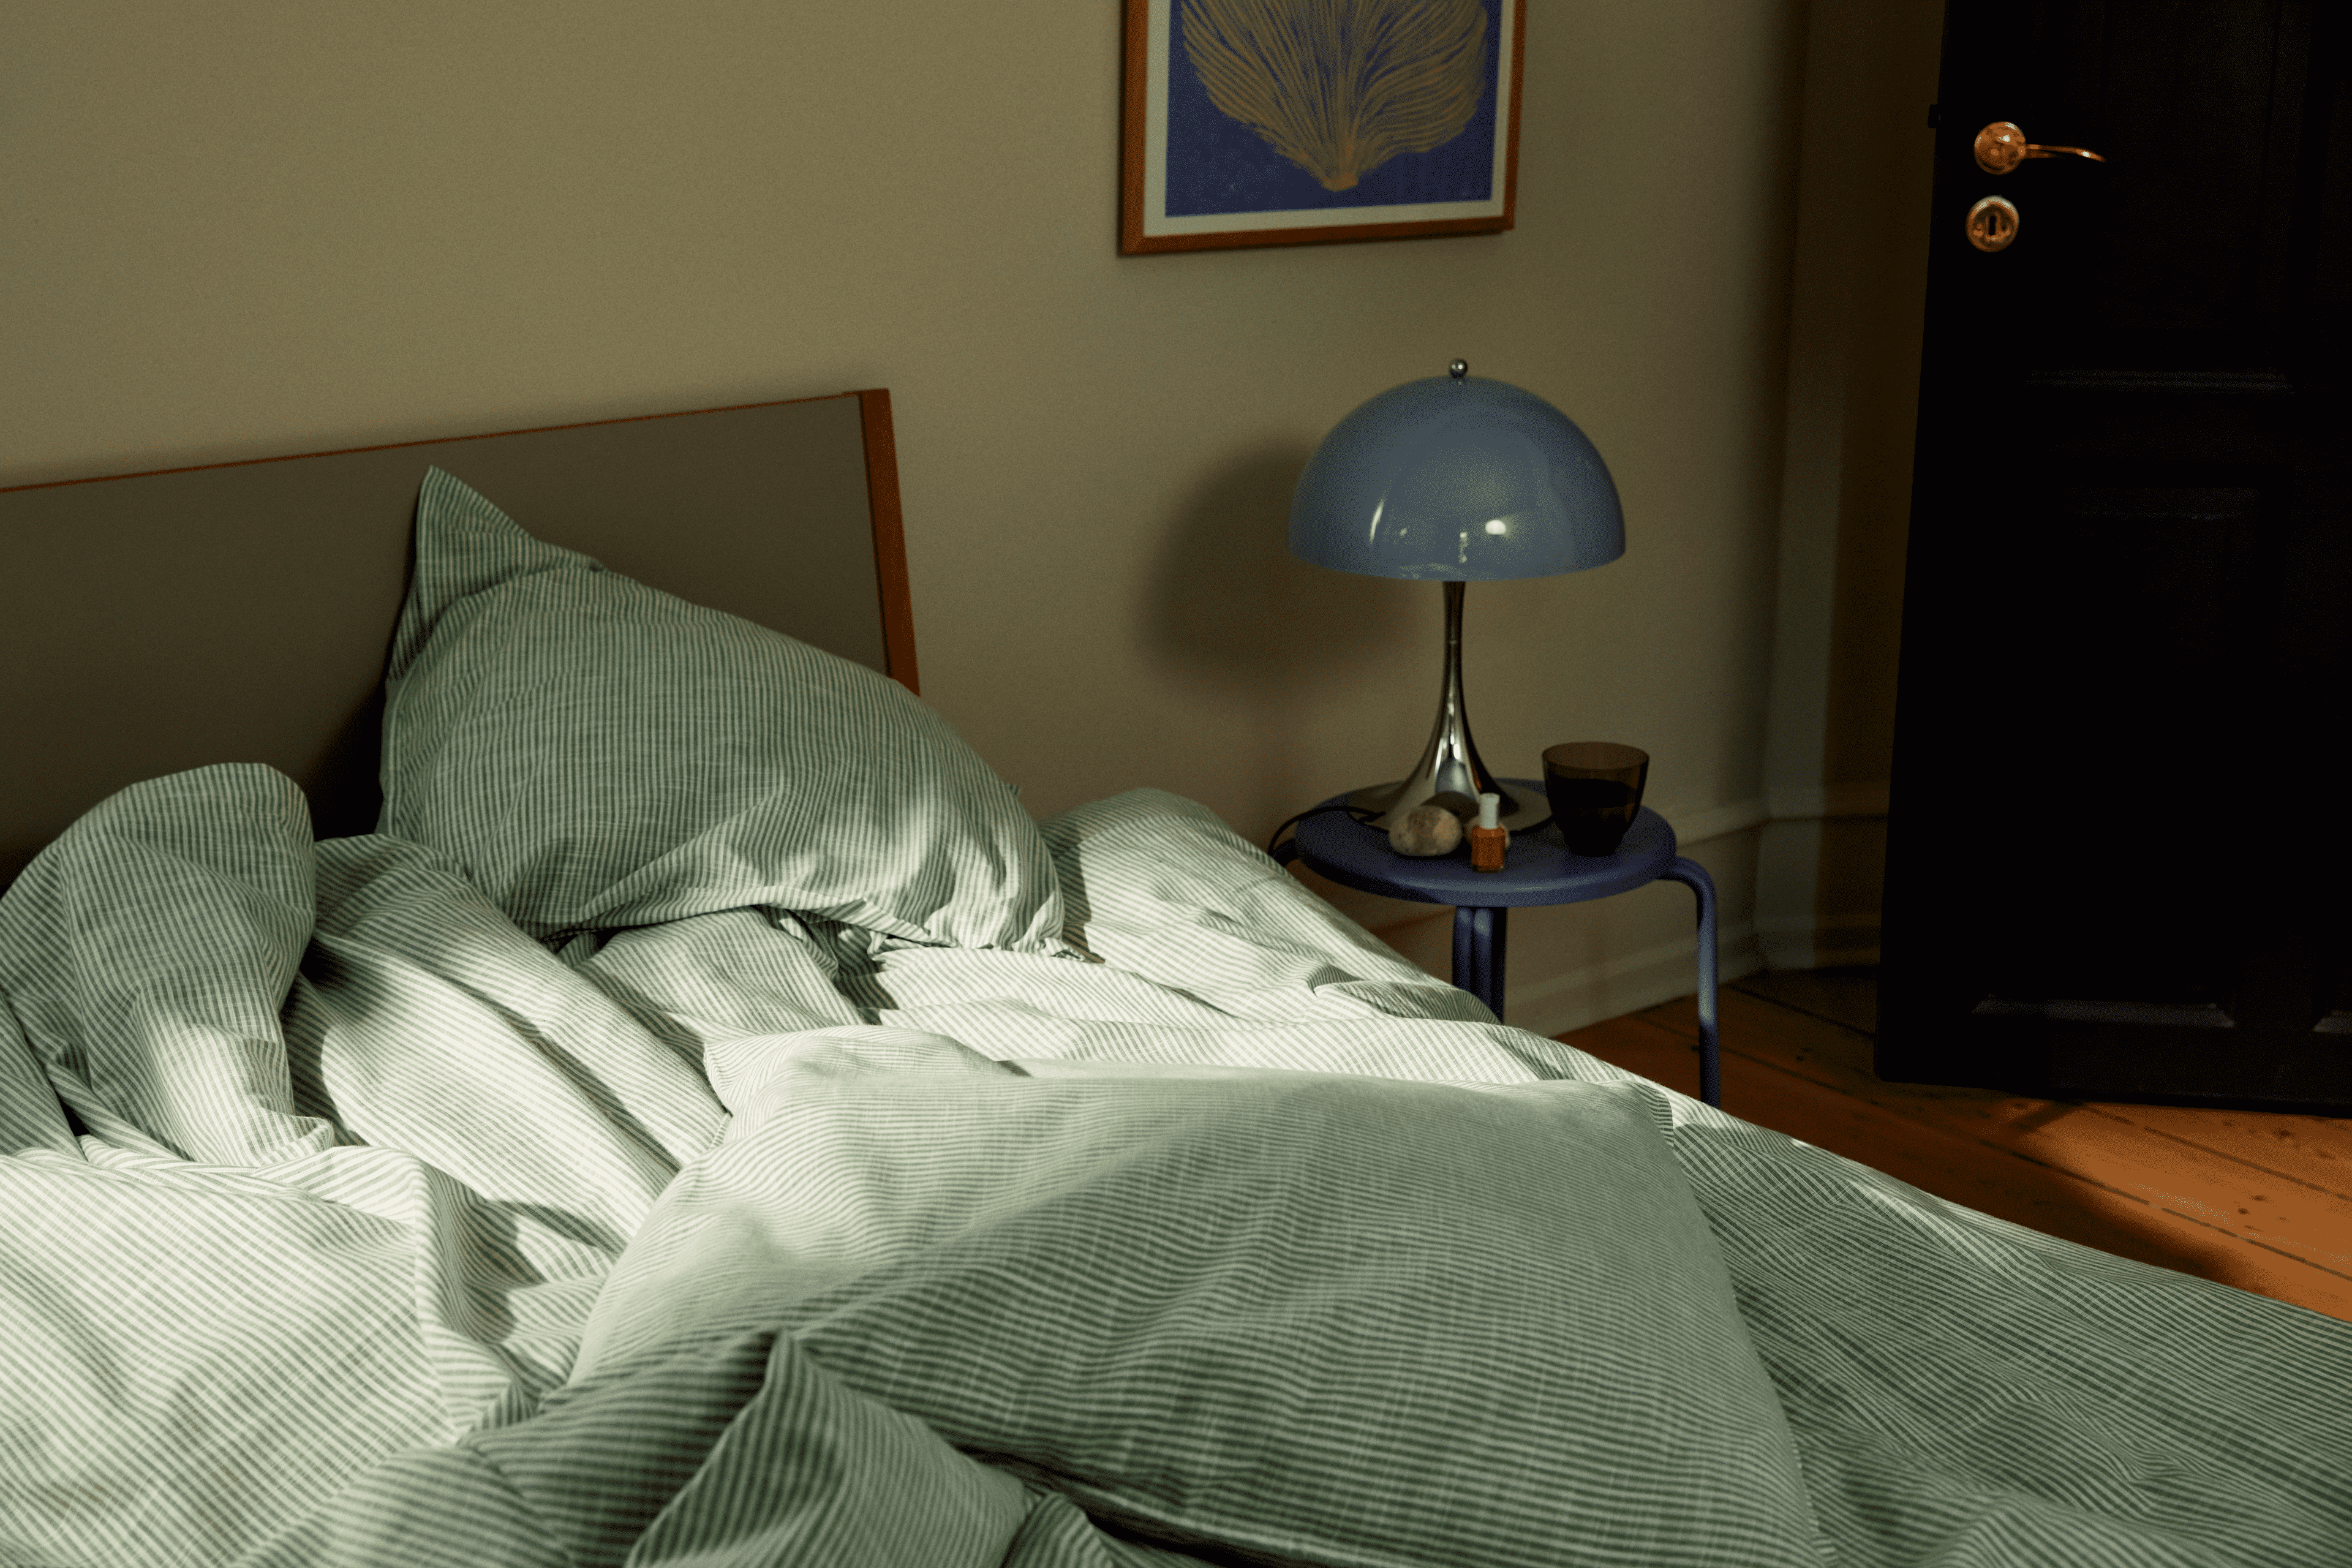 Bed linen 220x220 cm